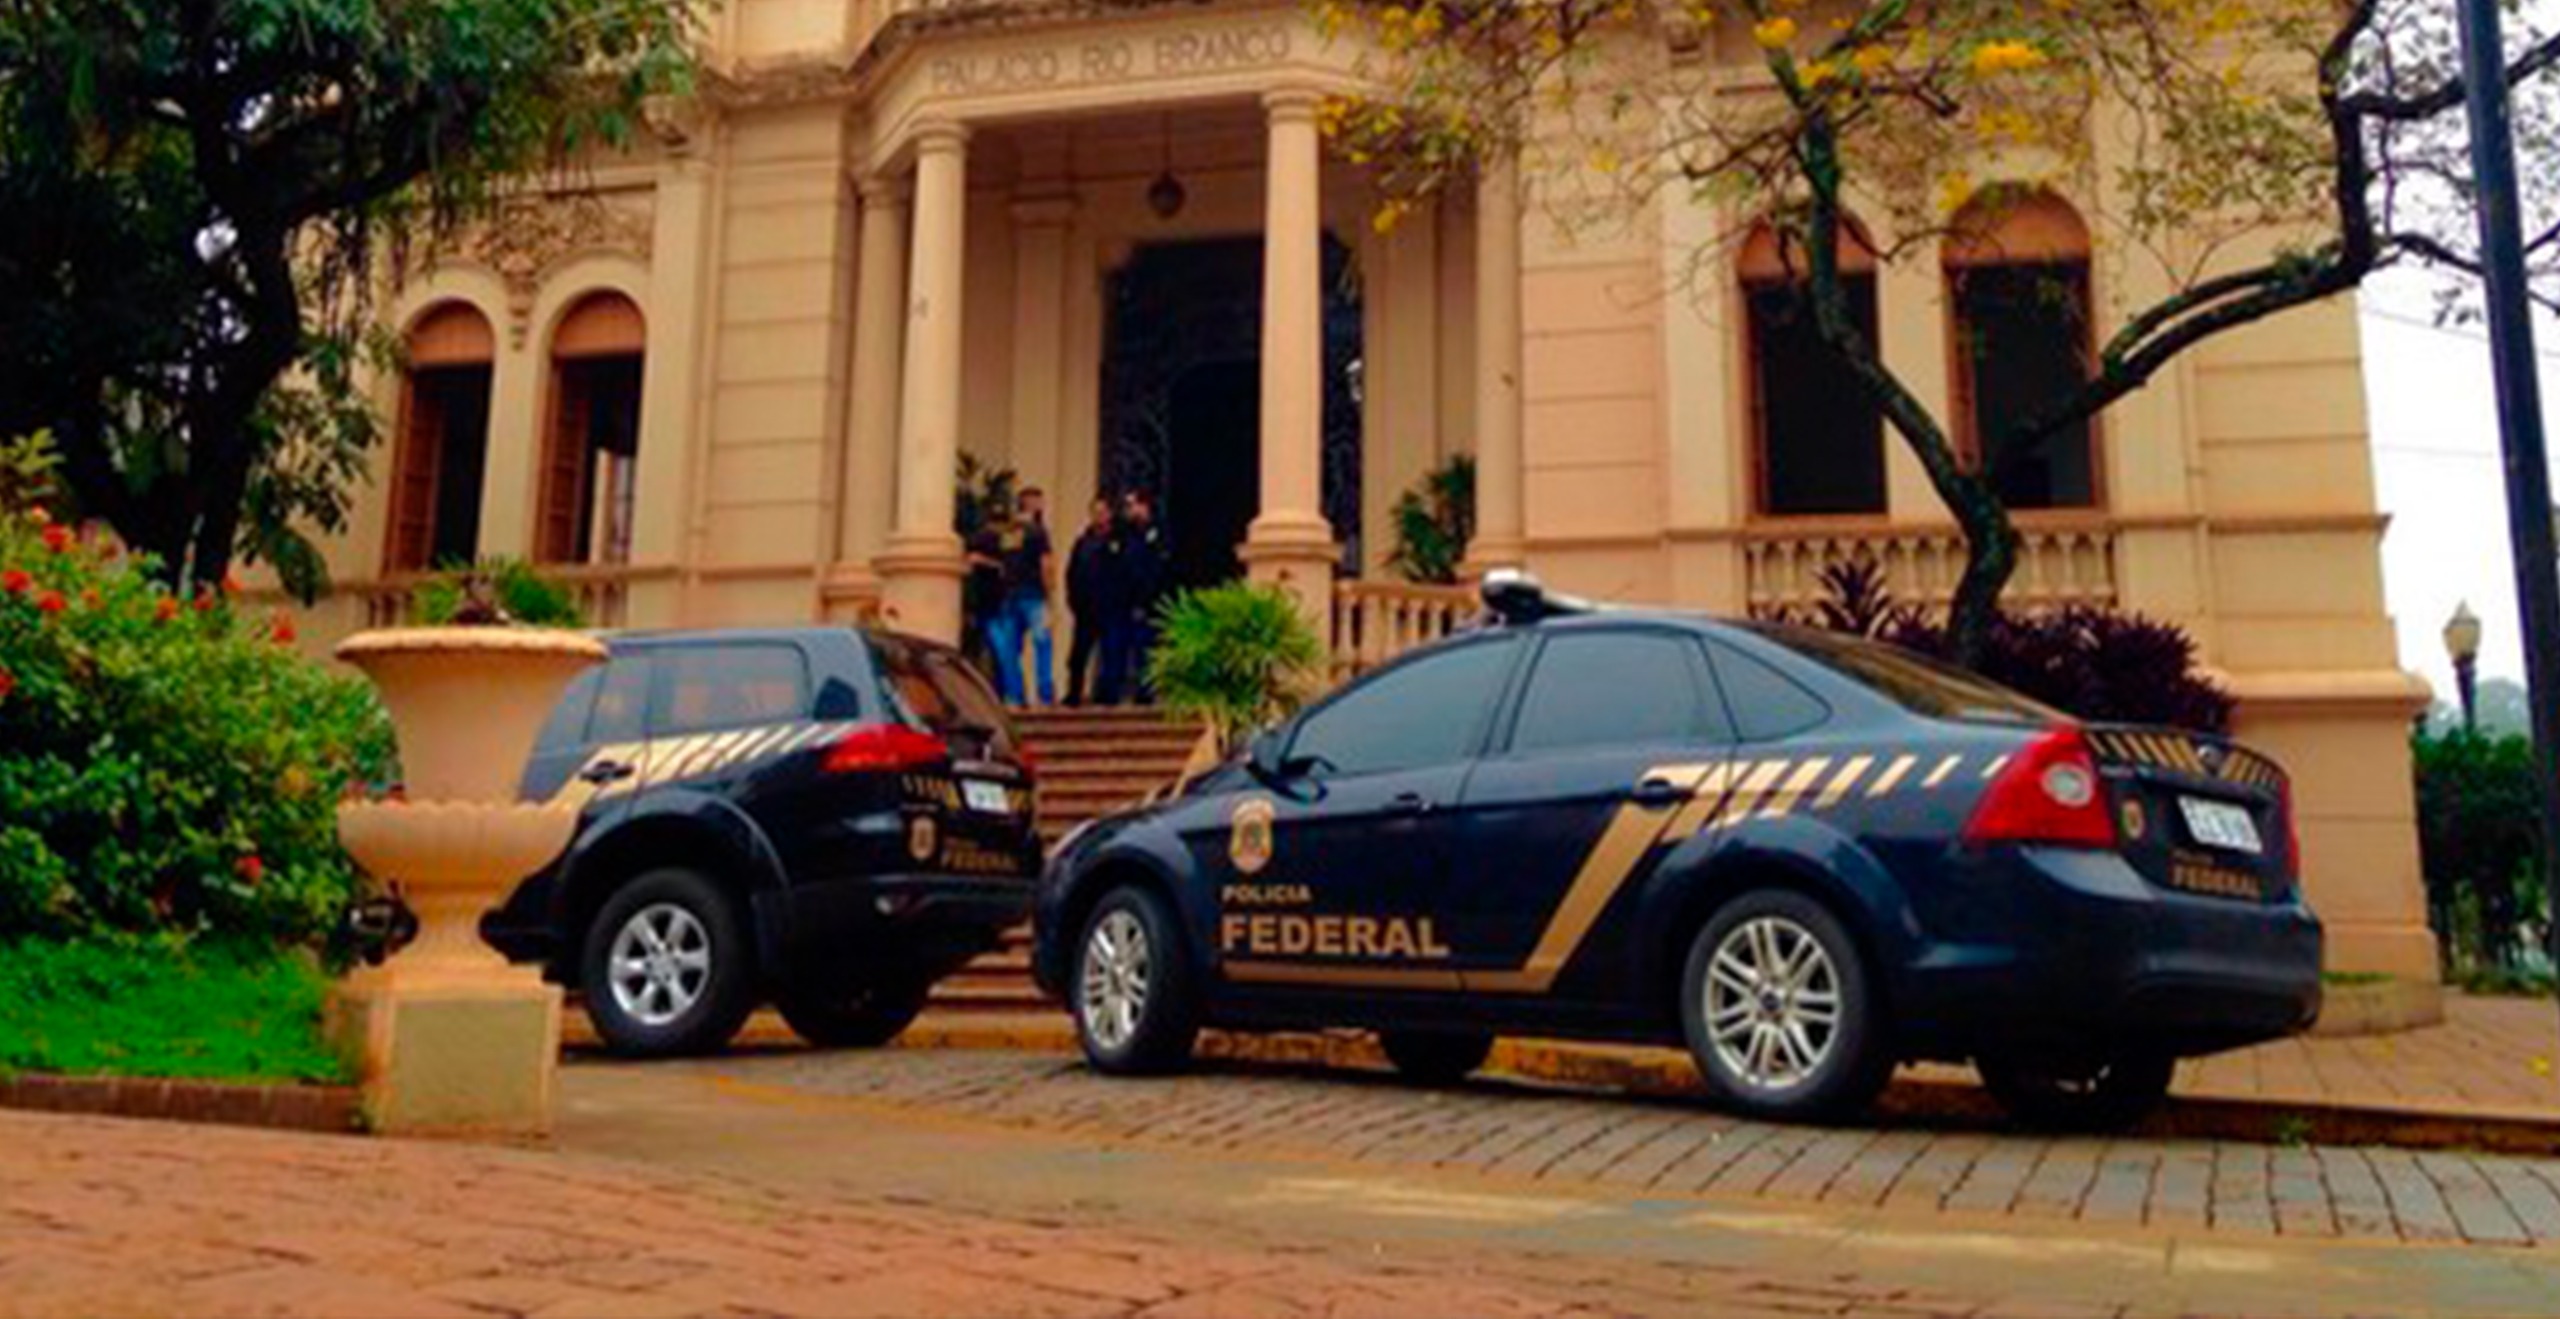 Viaturas da Polícia Federal em frente à Prefeitura de Ribeirão Preto